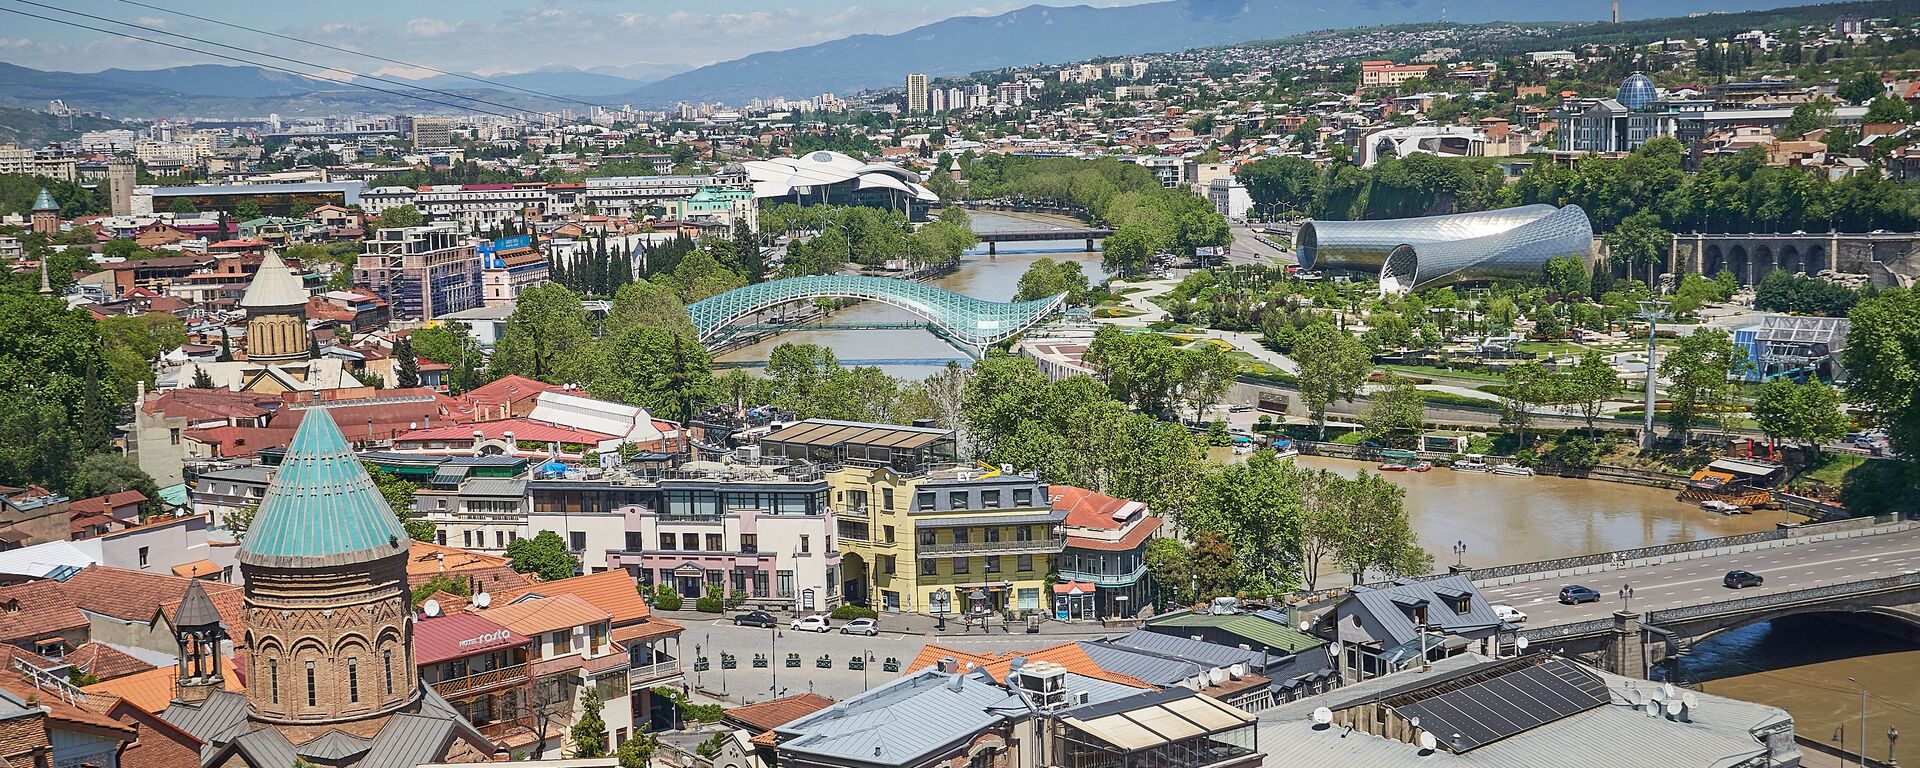 Вид на город Тбилиси - исторический центр набережная реки Кура и мосты - Sputnik Грузия, 1920, 09.03.2021